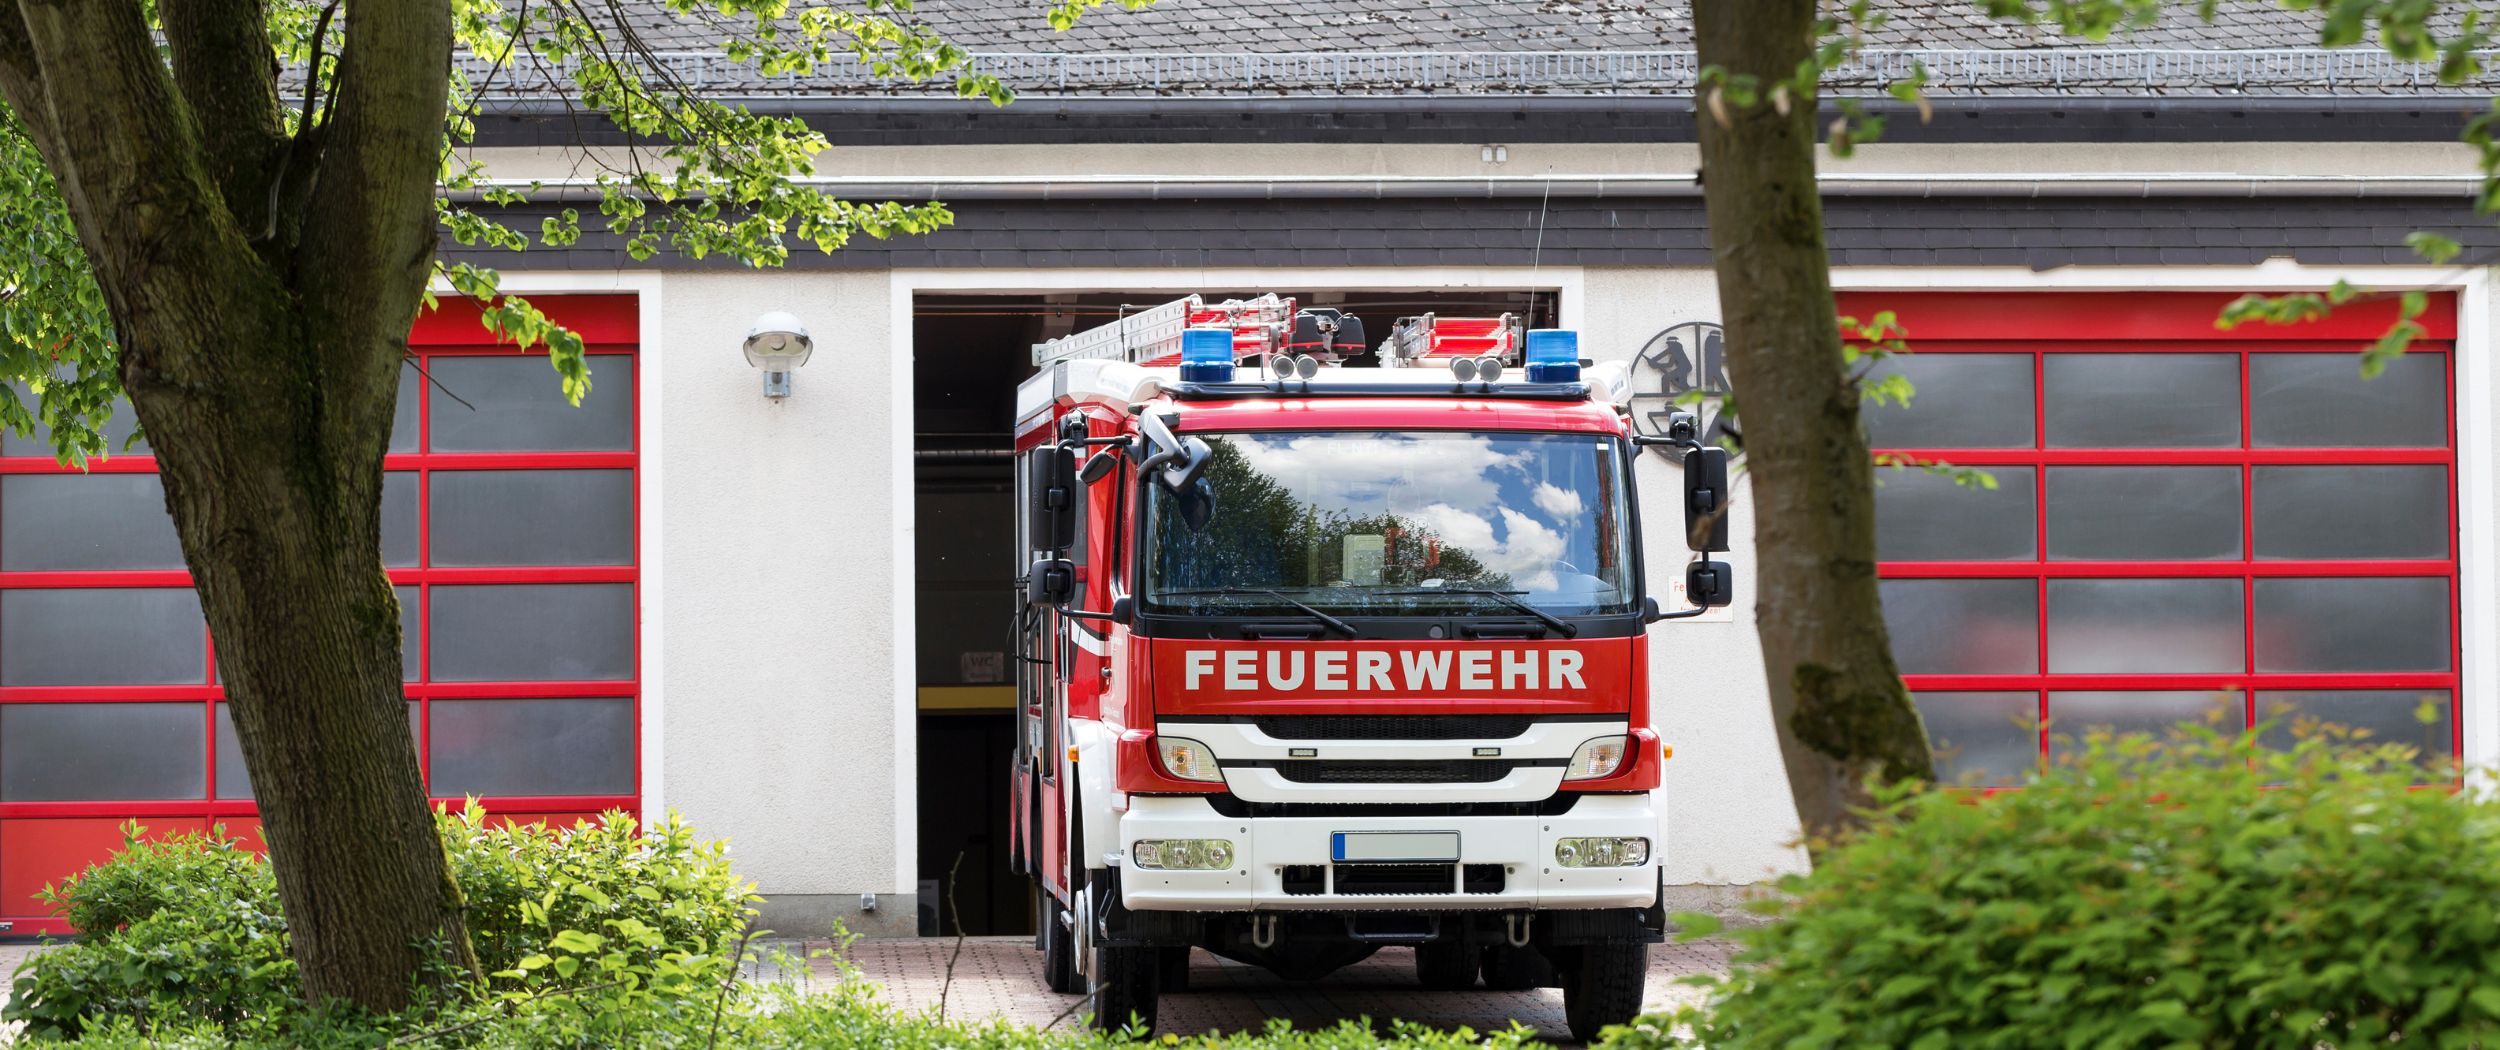 Ein Feuerwehrauto fährt aus einer Fahrzeughalle